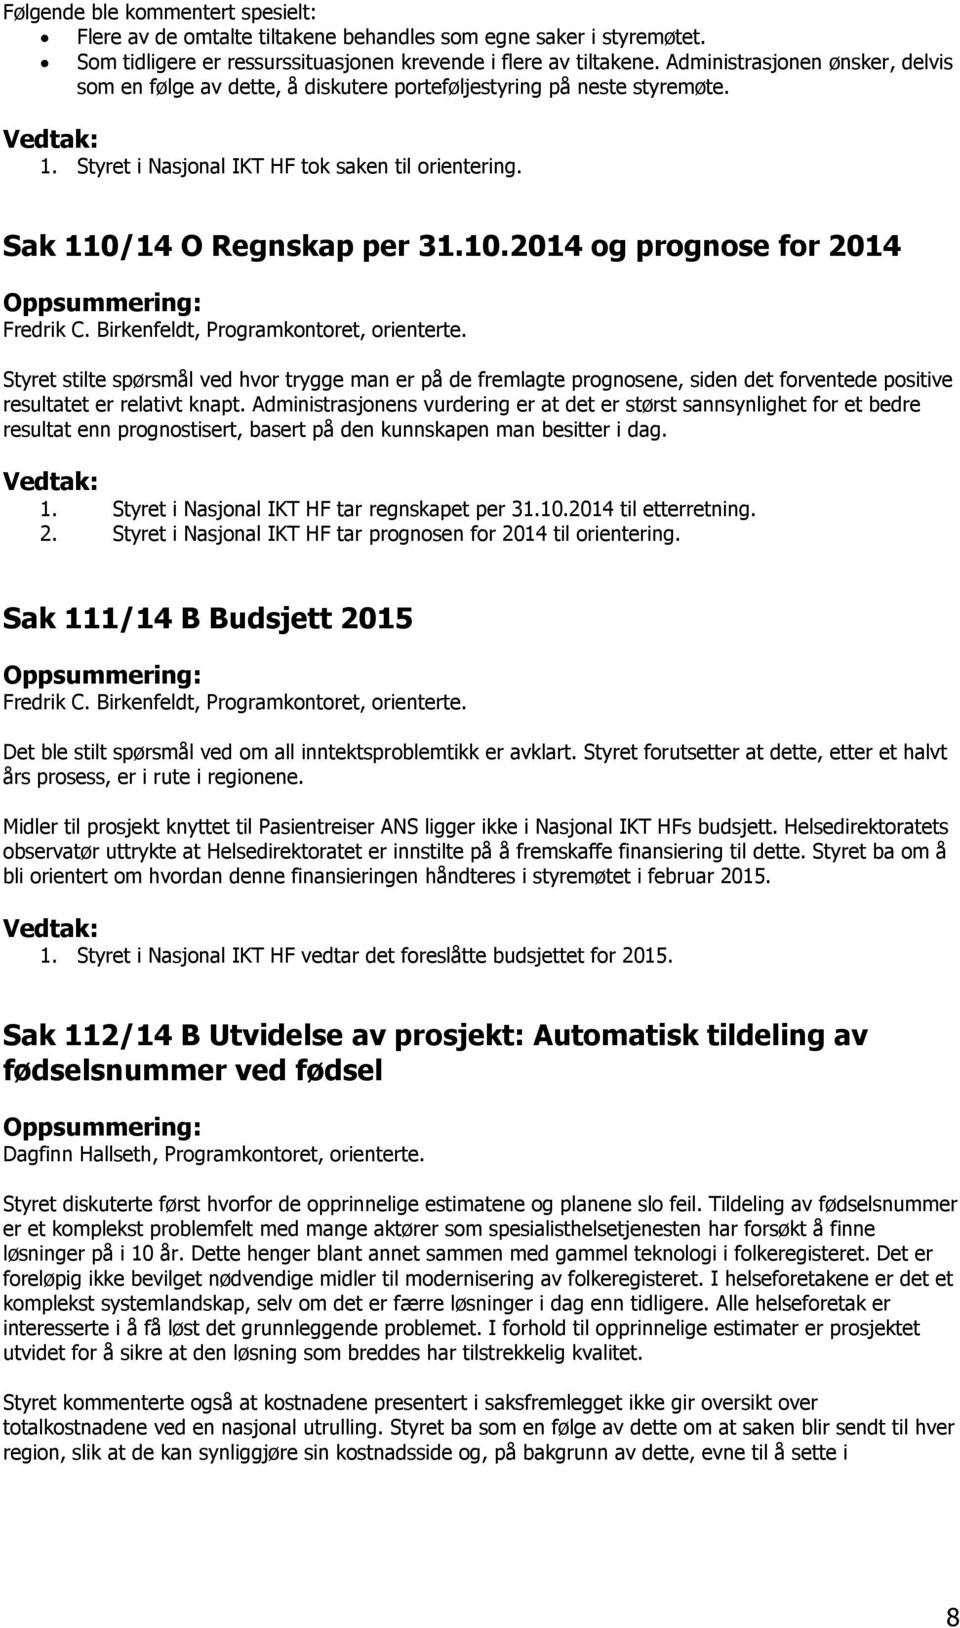 14 O Regnskap per 31.10.2014 og prognose for 2014 Oppsummering: Fredrik C. Birkenfeldt, Programkontoret, orienterte.